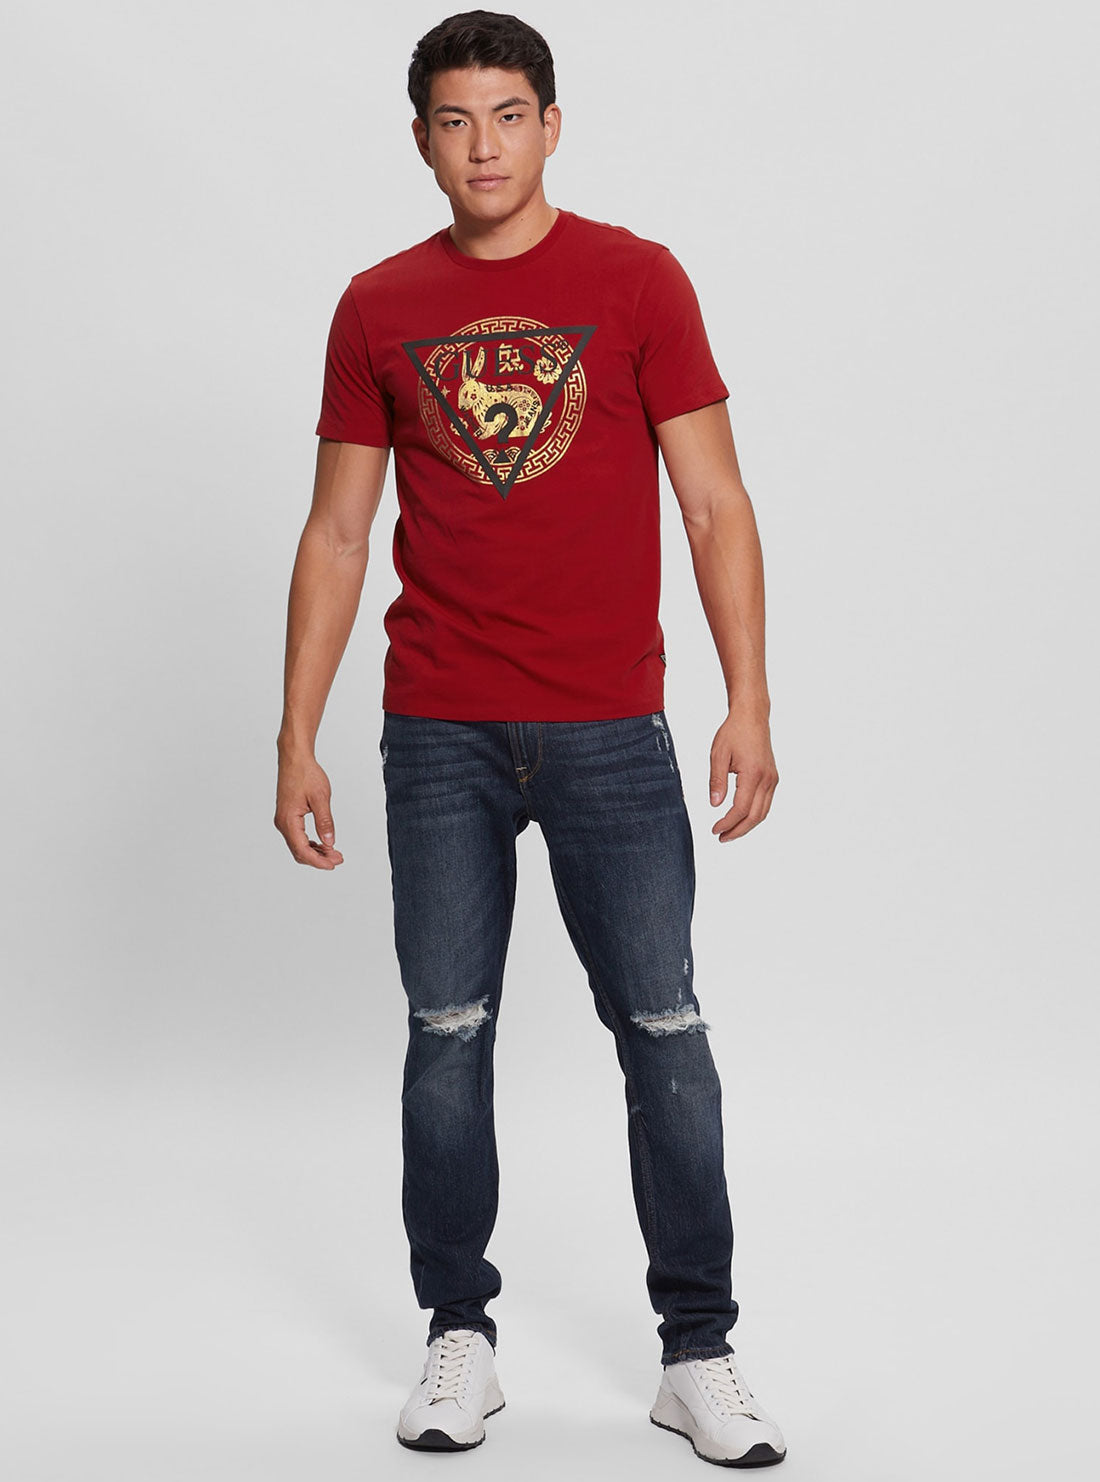 GUESS Men's Red Golden Rabbit Logo T-Shirt Full View